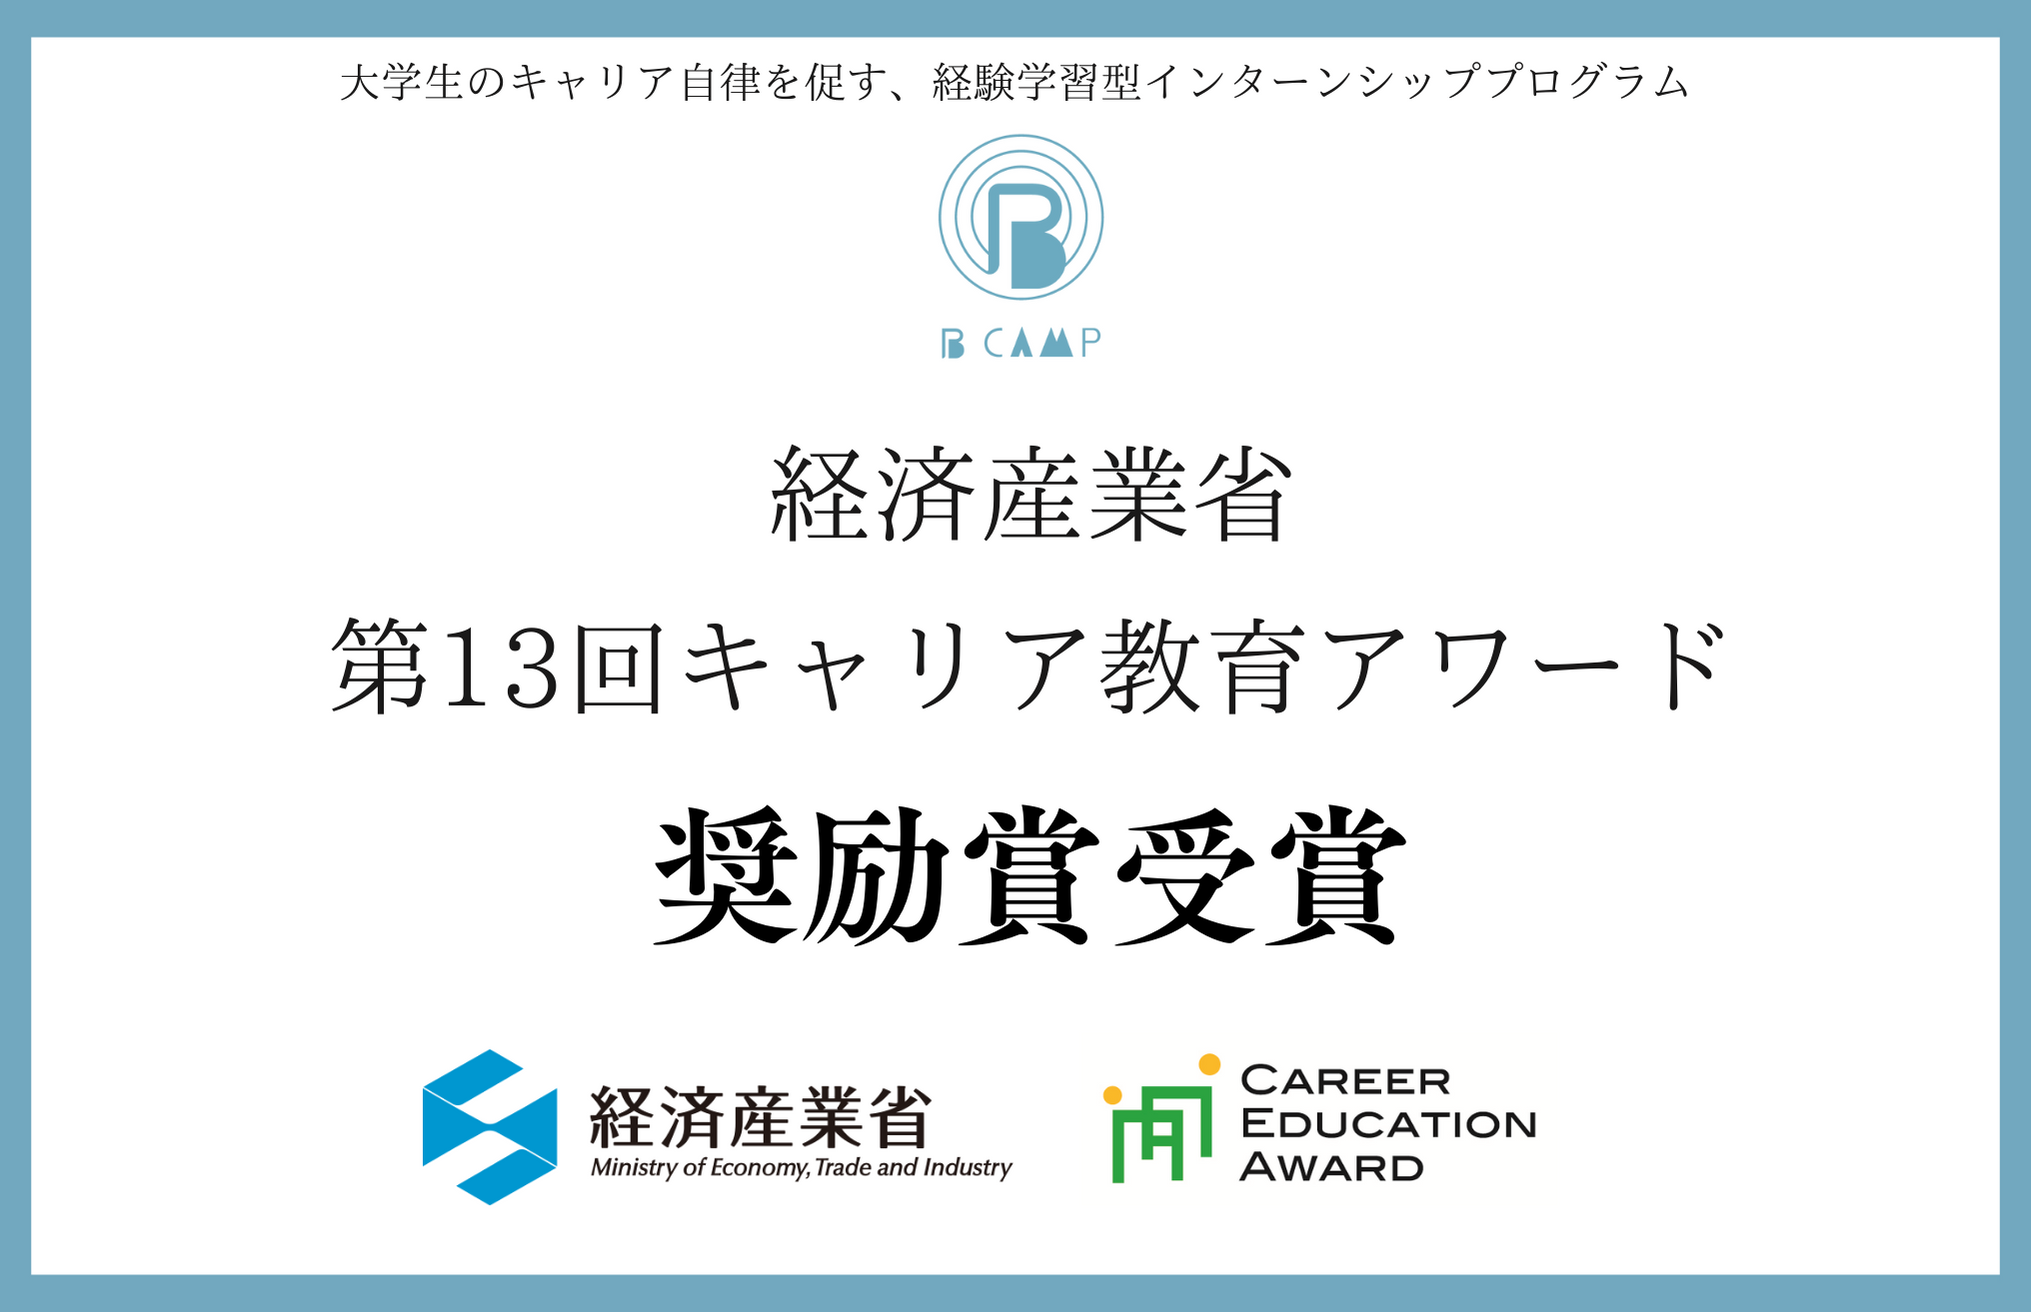 【受賞】経済産業省「第13回キャリア教育アワード」奨励賞を受賞